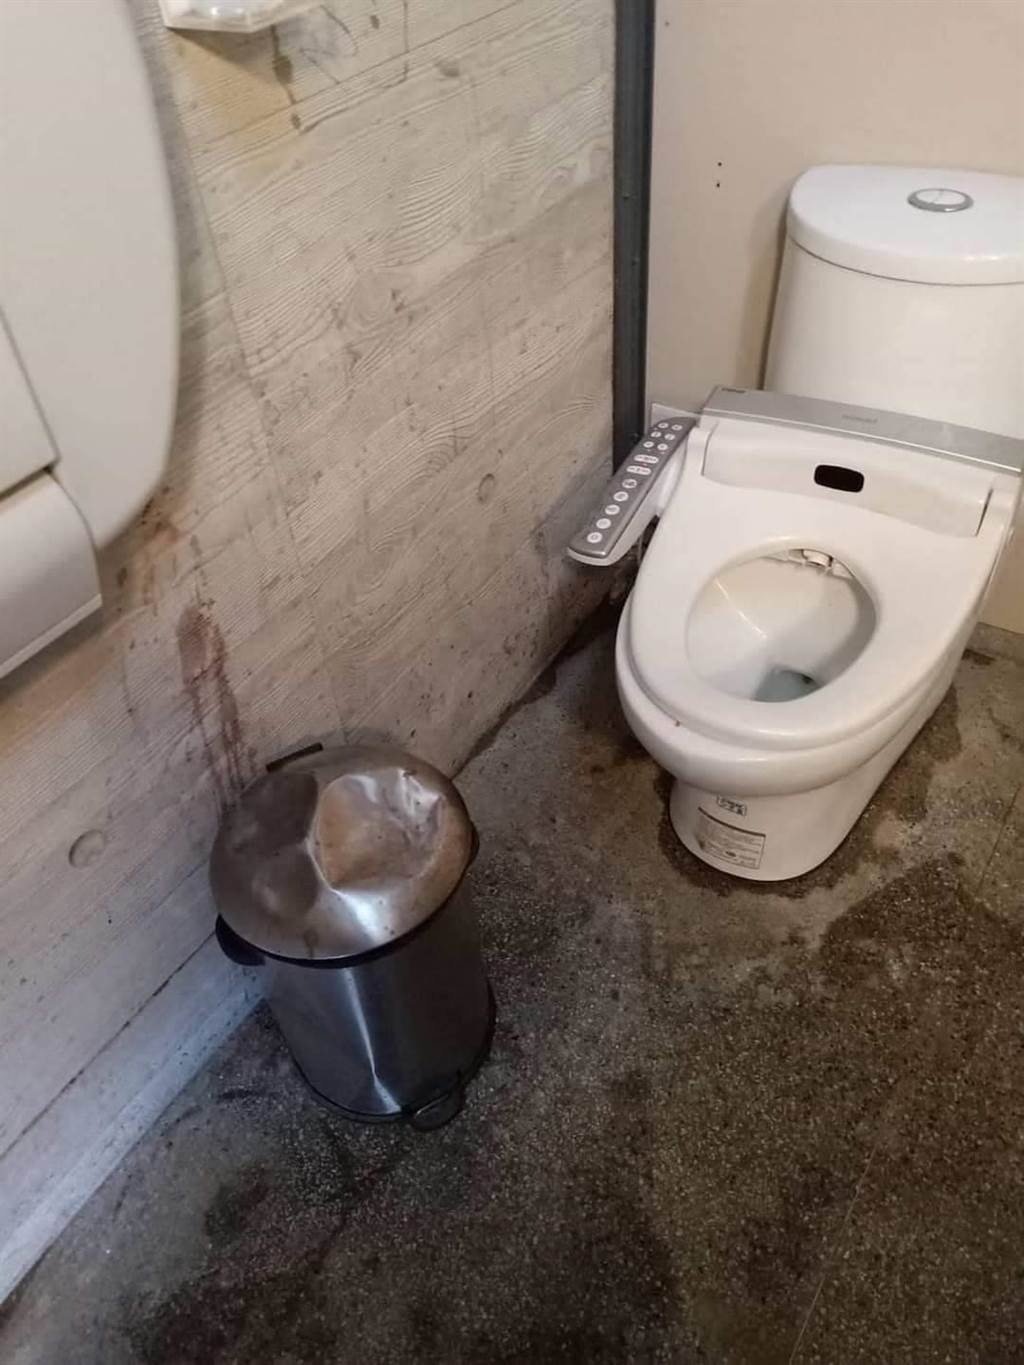 高虹安在臉書表示，全國首座公廁裝設免治馬桶就在新竹市，不知屬林智堅團隊的沈慧虹，有沒有喊出要延續這項政策？（高虹安提供／陳育賢新竹傳真）